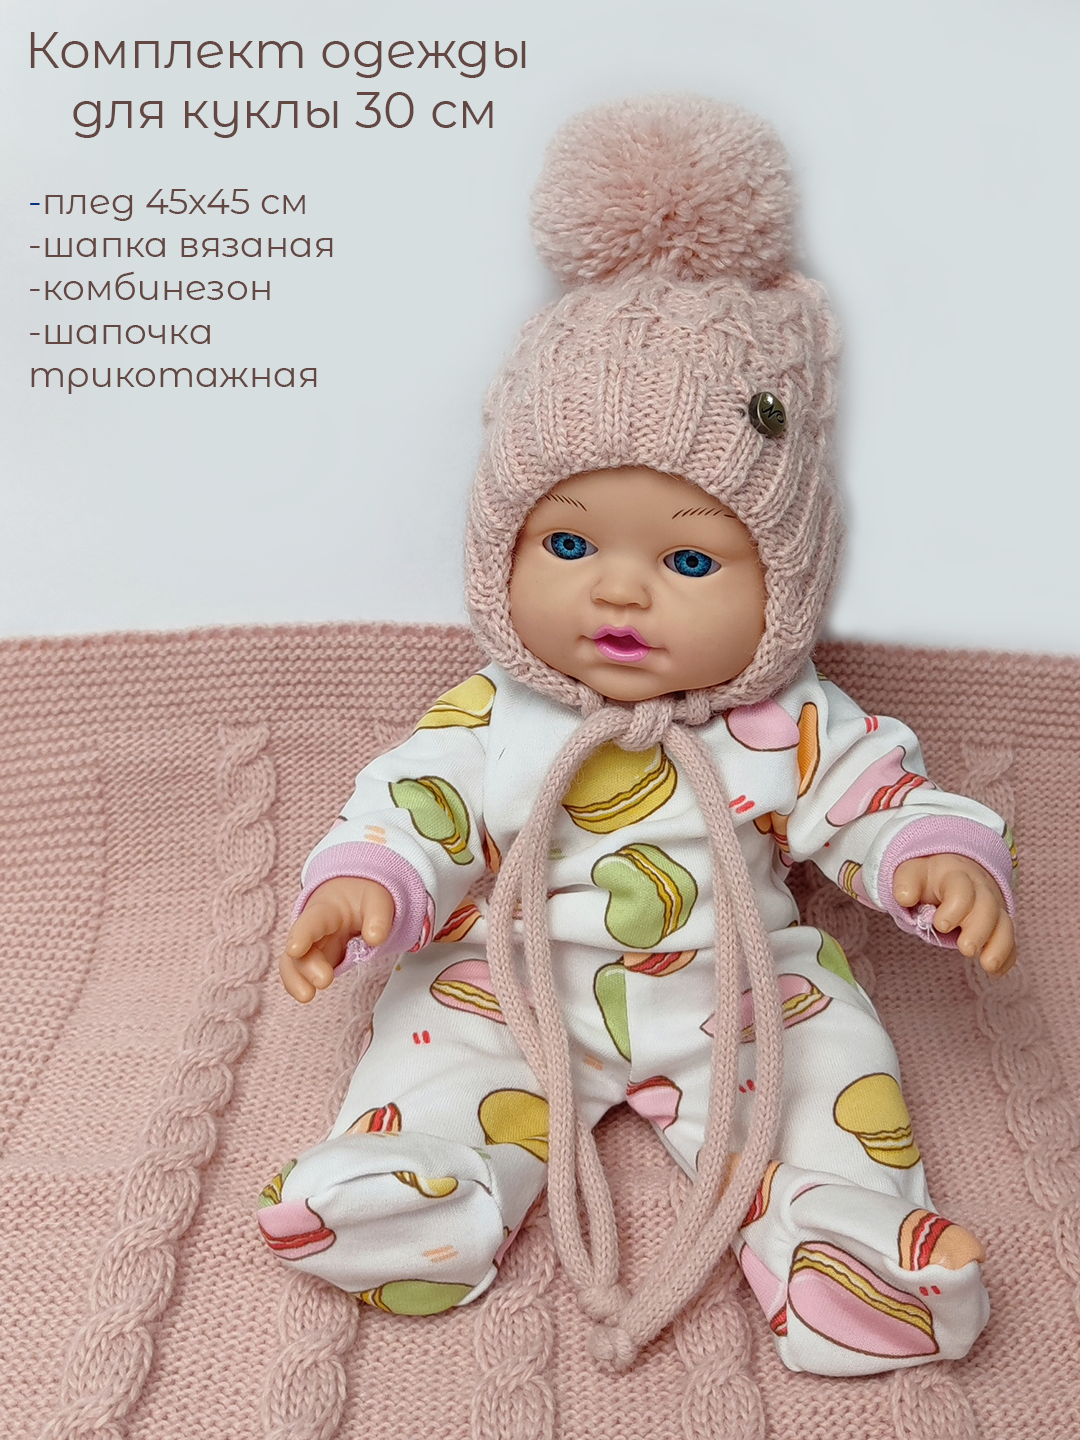 Одежда для куклы RevoKids Комбинезон шапки плед для куклы 30 см И-778-4/1 - фото 2